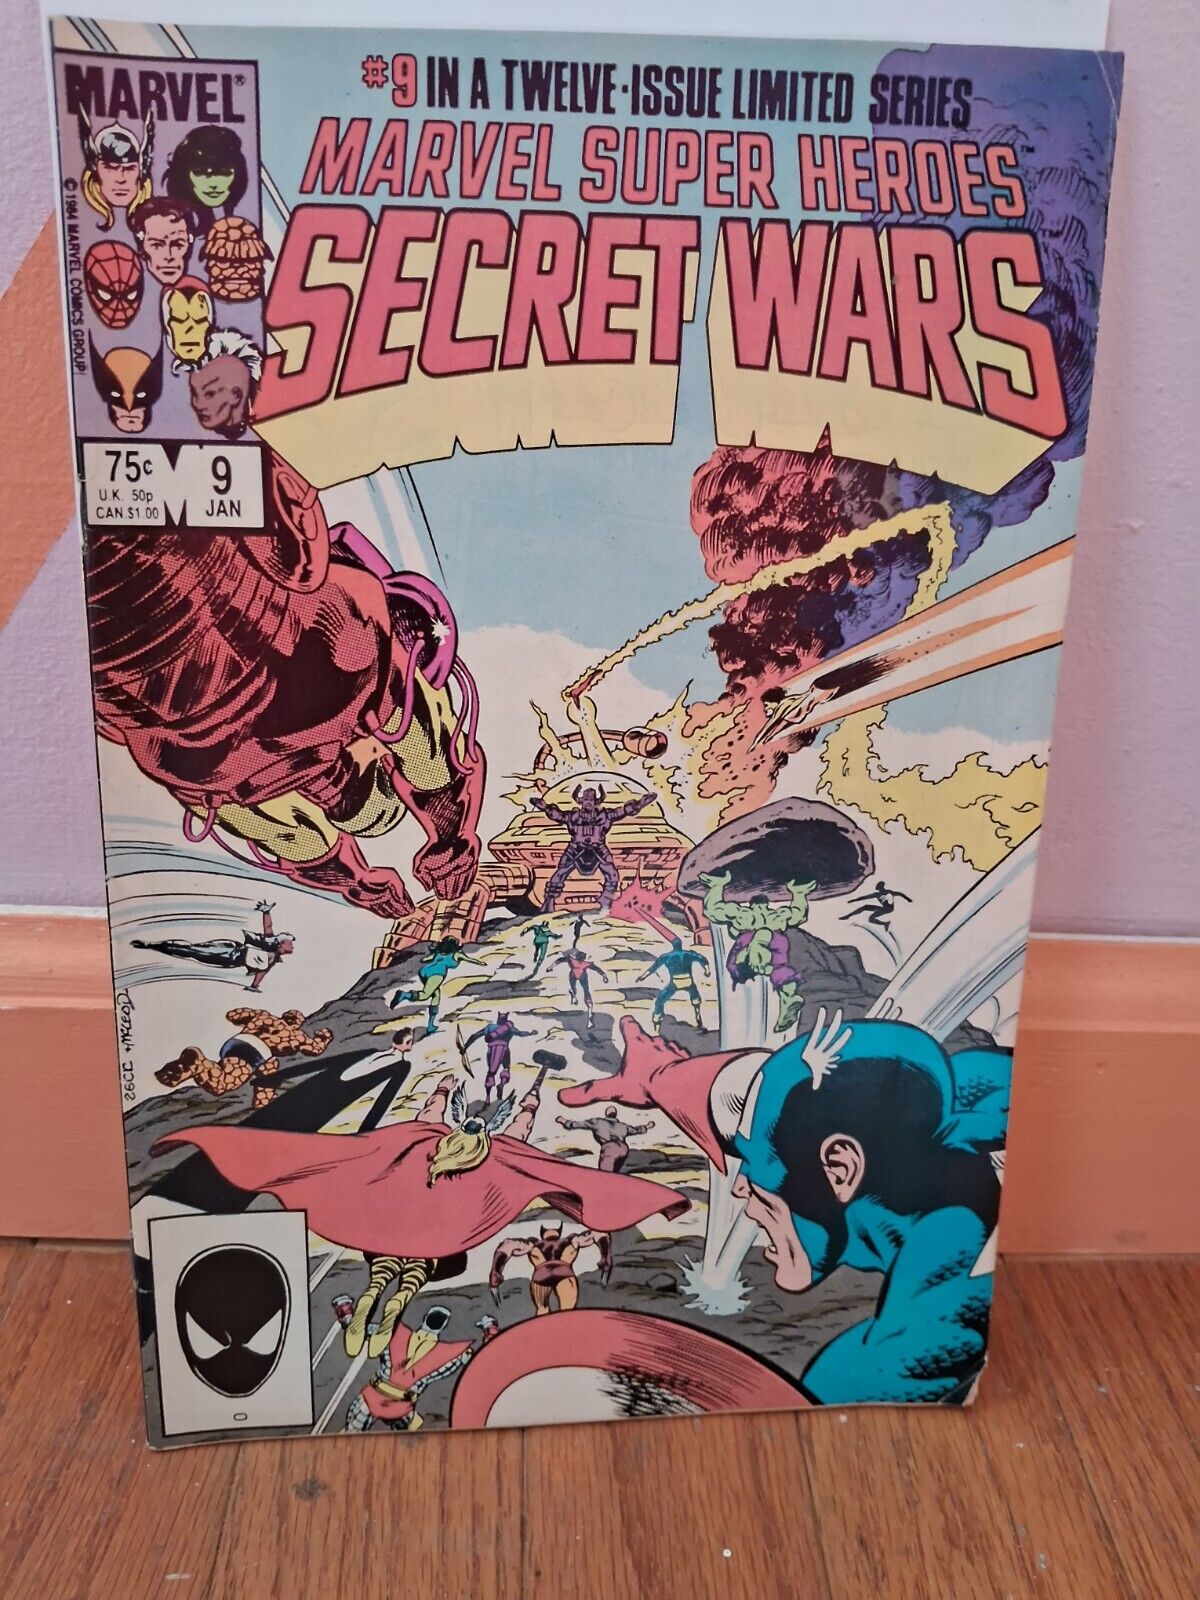 Marvel Super-Heroes Secret Wars #9 (Marvel Comics January 1985)